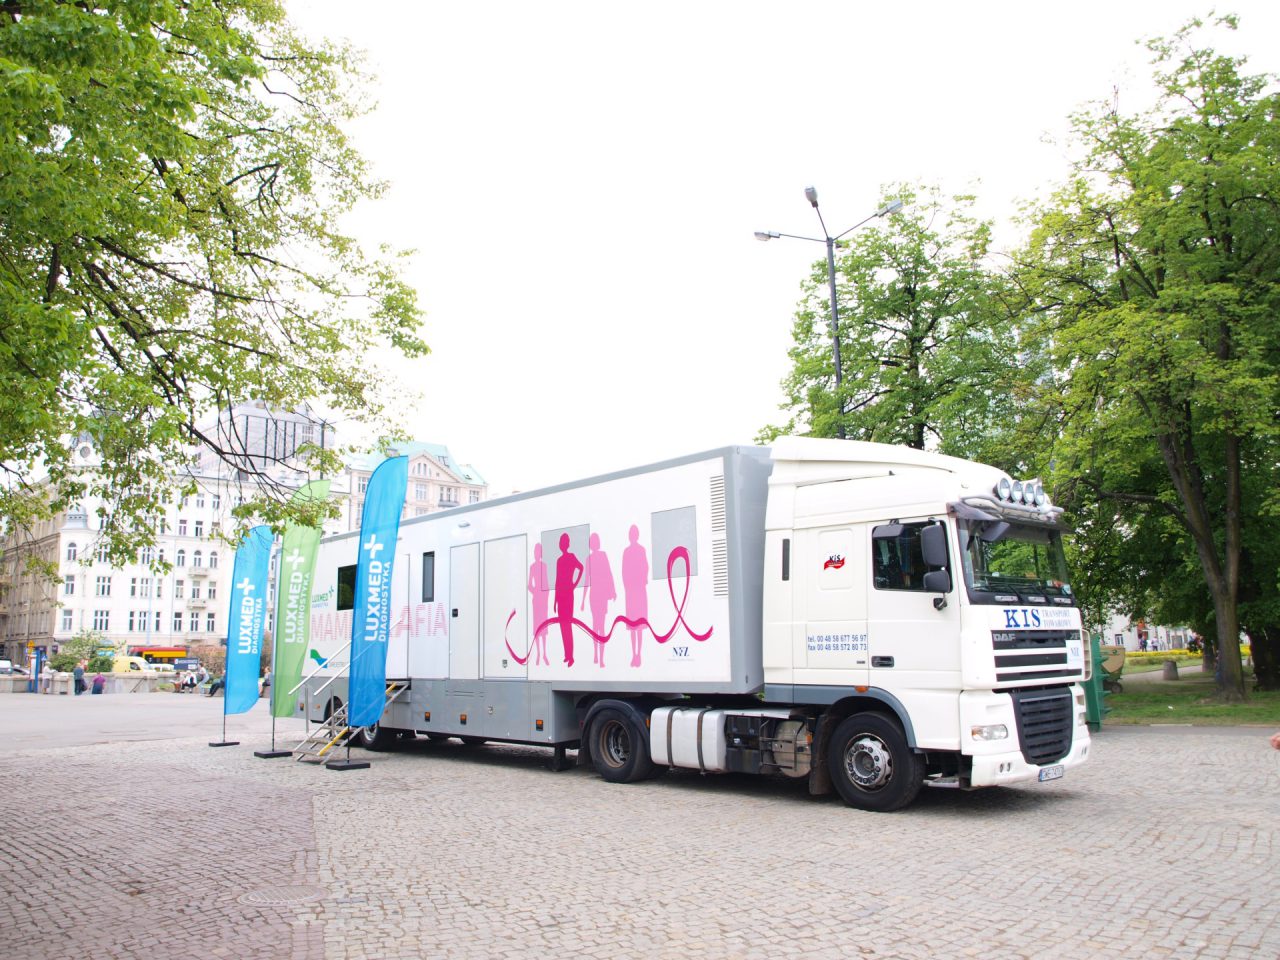 Zapraszamy na bezpłatne badania mammograficzne w styczniu 2021 r. - Rumia, Wejherowo, Reda